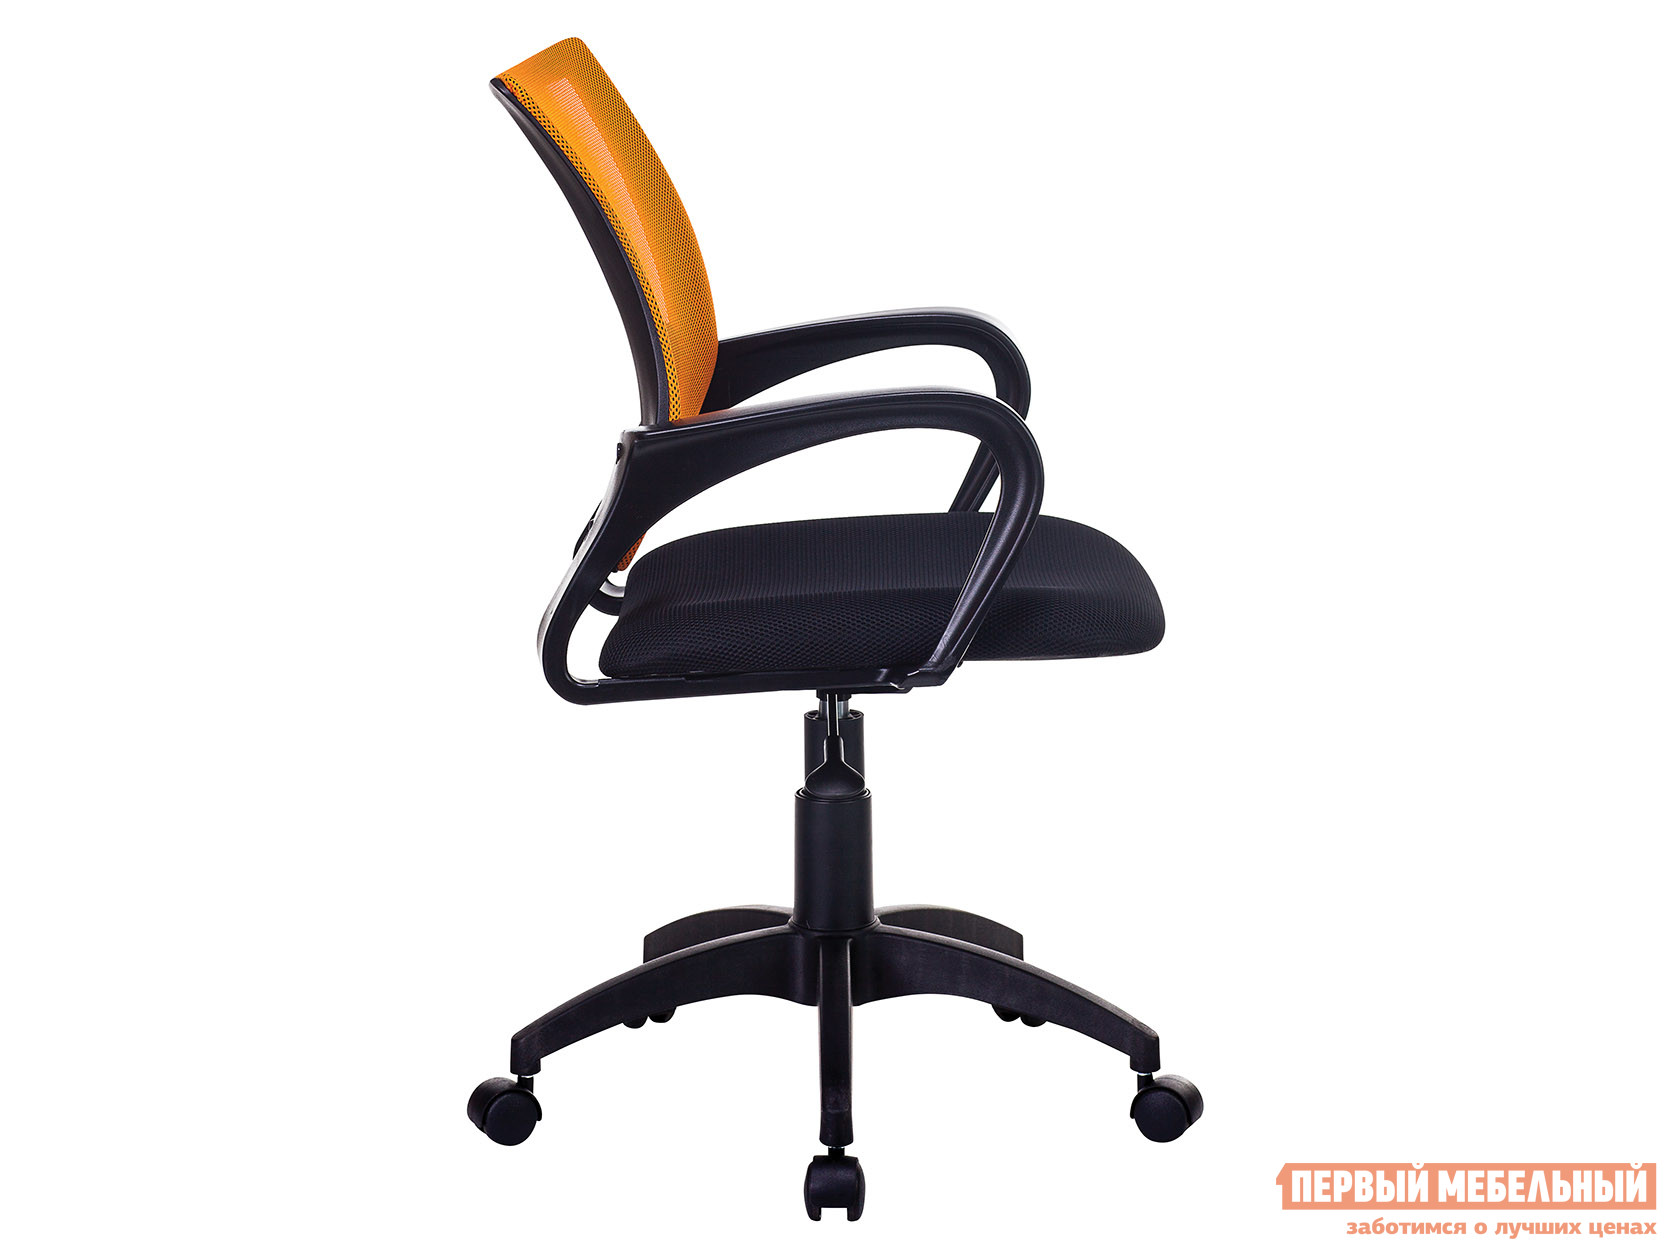 Офисное кресло  CH-695NLT TW-11 Черный, ткань / TW-38-3 Оранжевый, сетка от Первый Мебельный